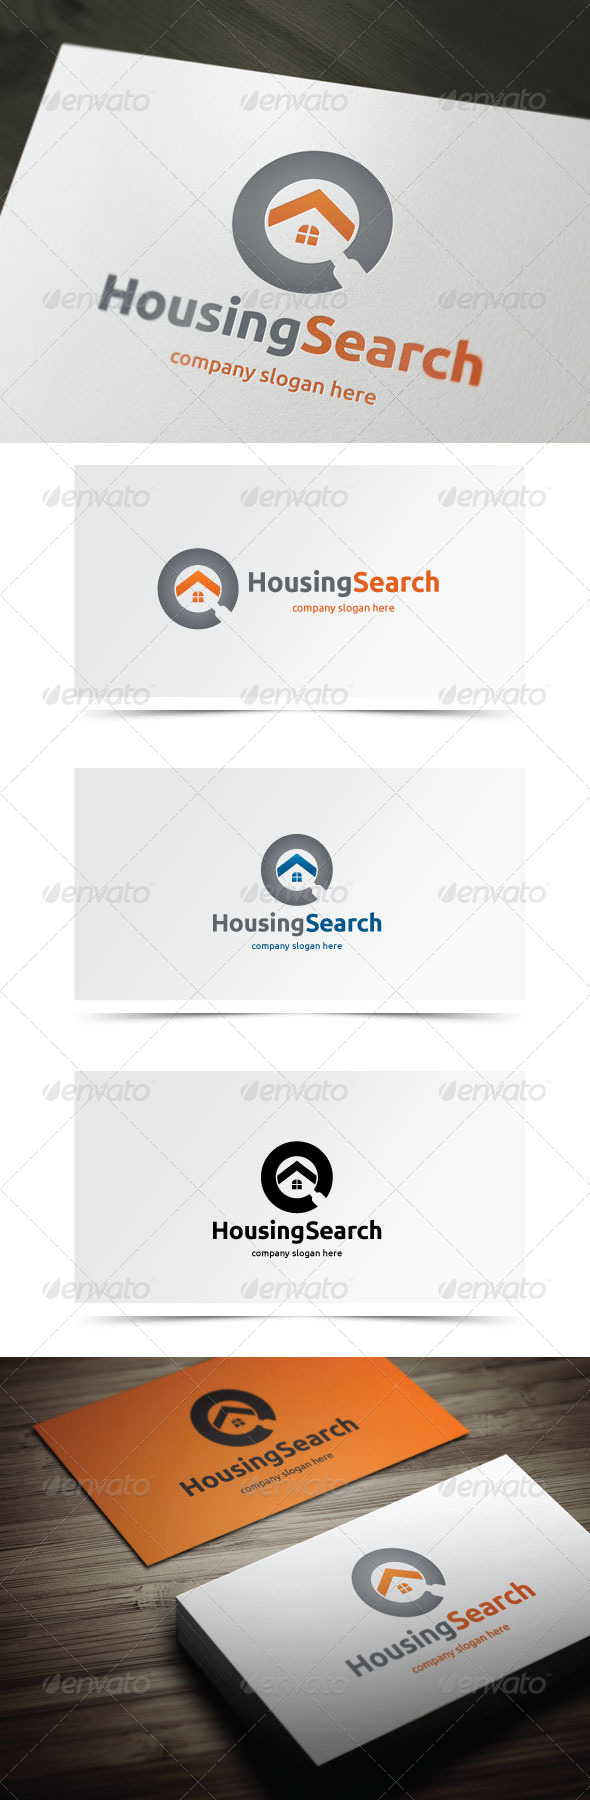 Housing Search